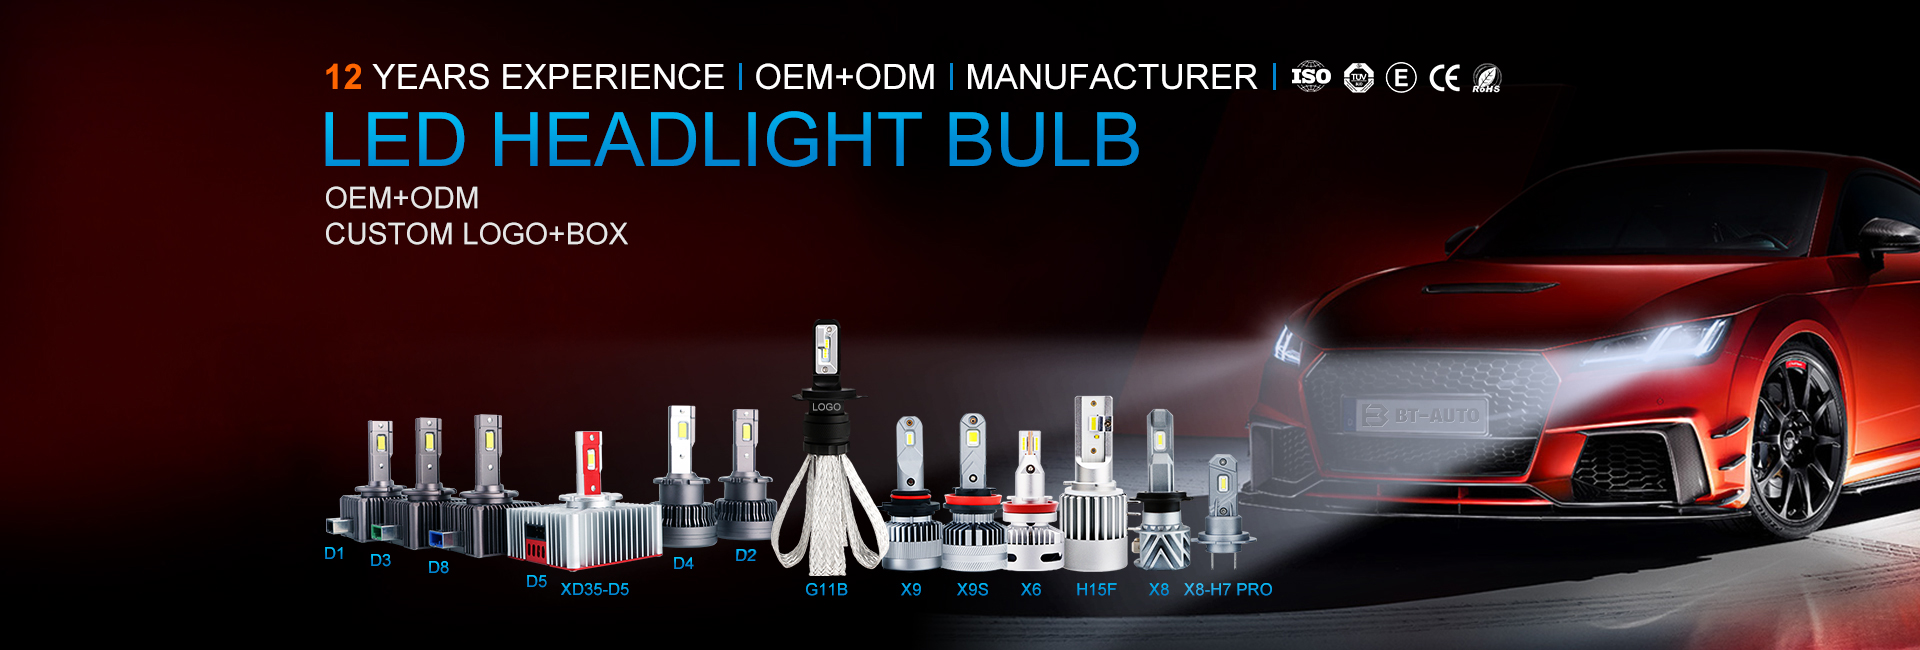 I-Auto LED Headlight